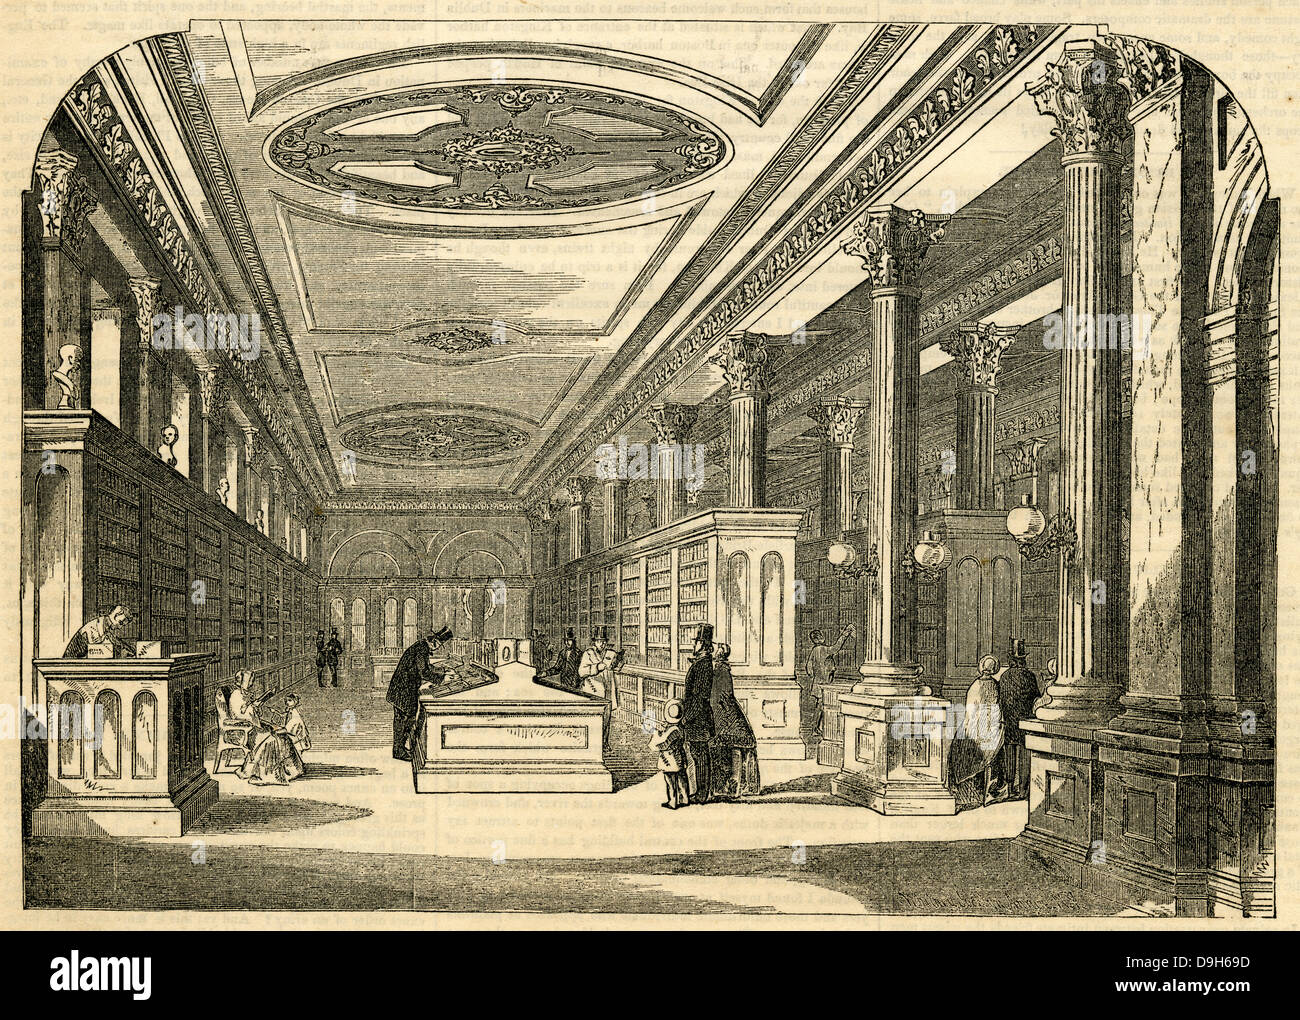 1854-Gravur, innere Ansicht der Grundsatz Vertrieb-Raum D. Appleton & Co. Buchhandlung, 346 und 348 Broadway, New York. Stockfoto